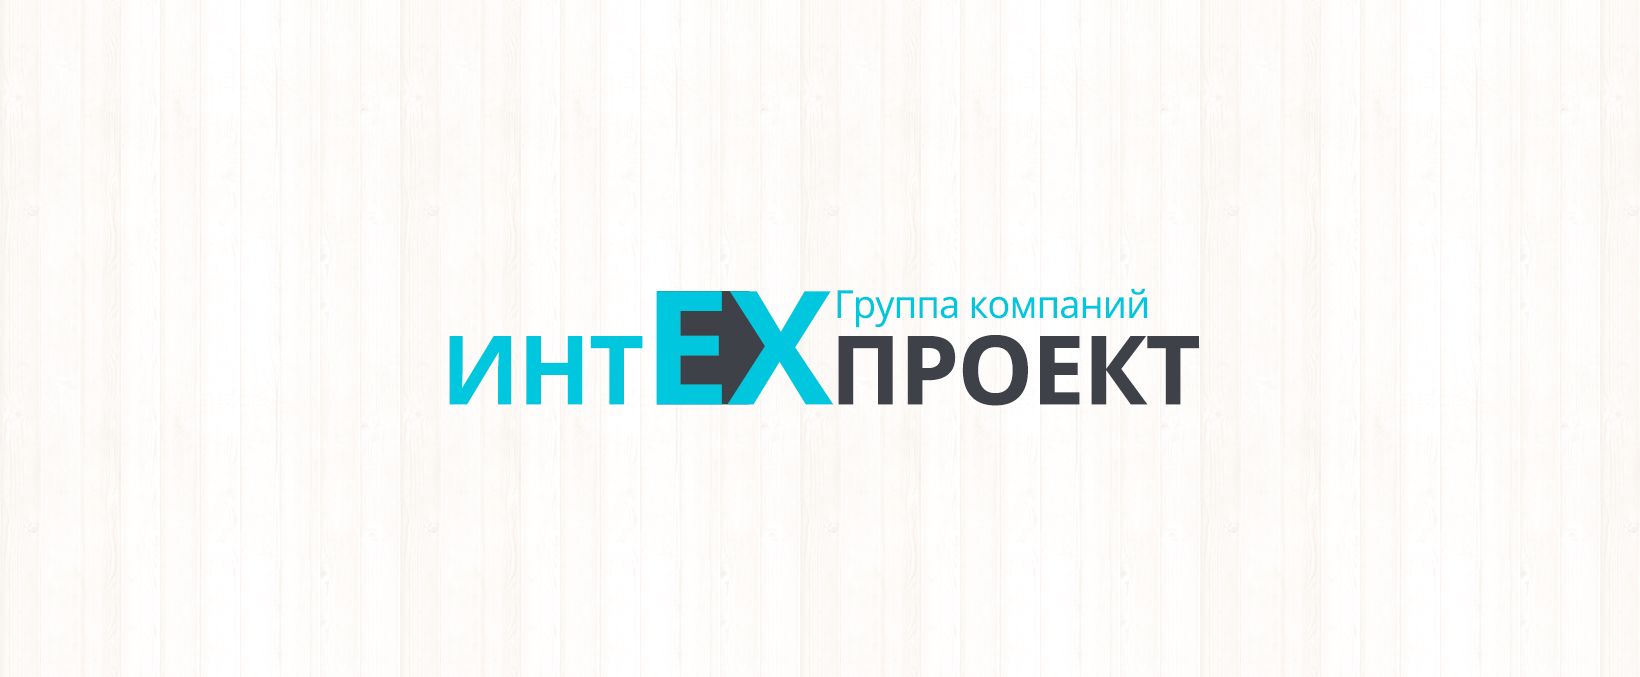 Логотип для Группы компаний - дизайнер Apxutektop_d